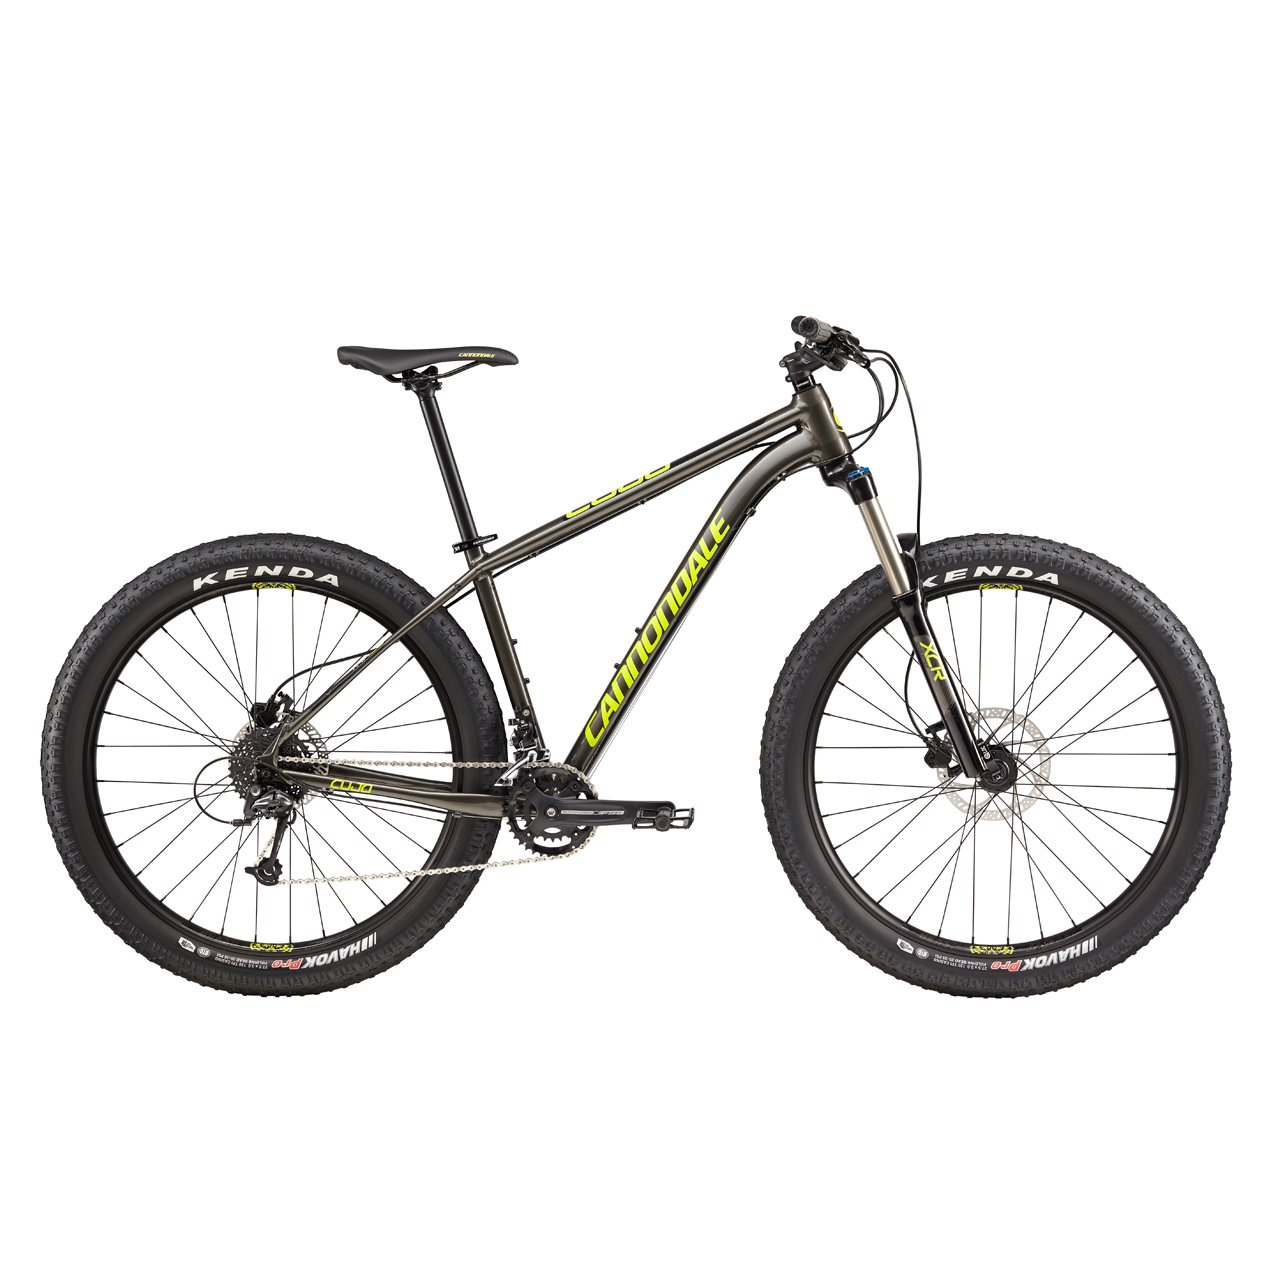 دوچرخه کوهستان کنندال Cujo 3 سایز 27.5 رنگ مشکی2017